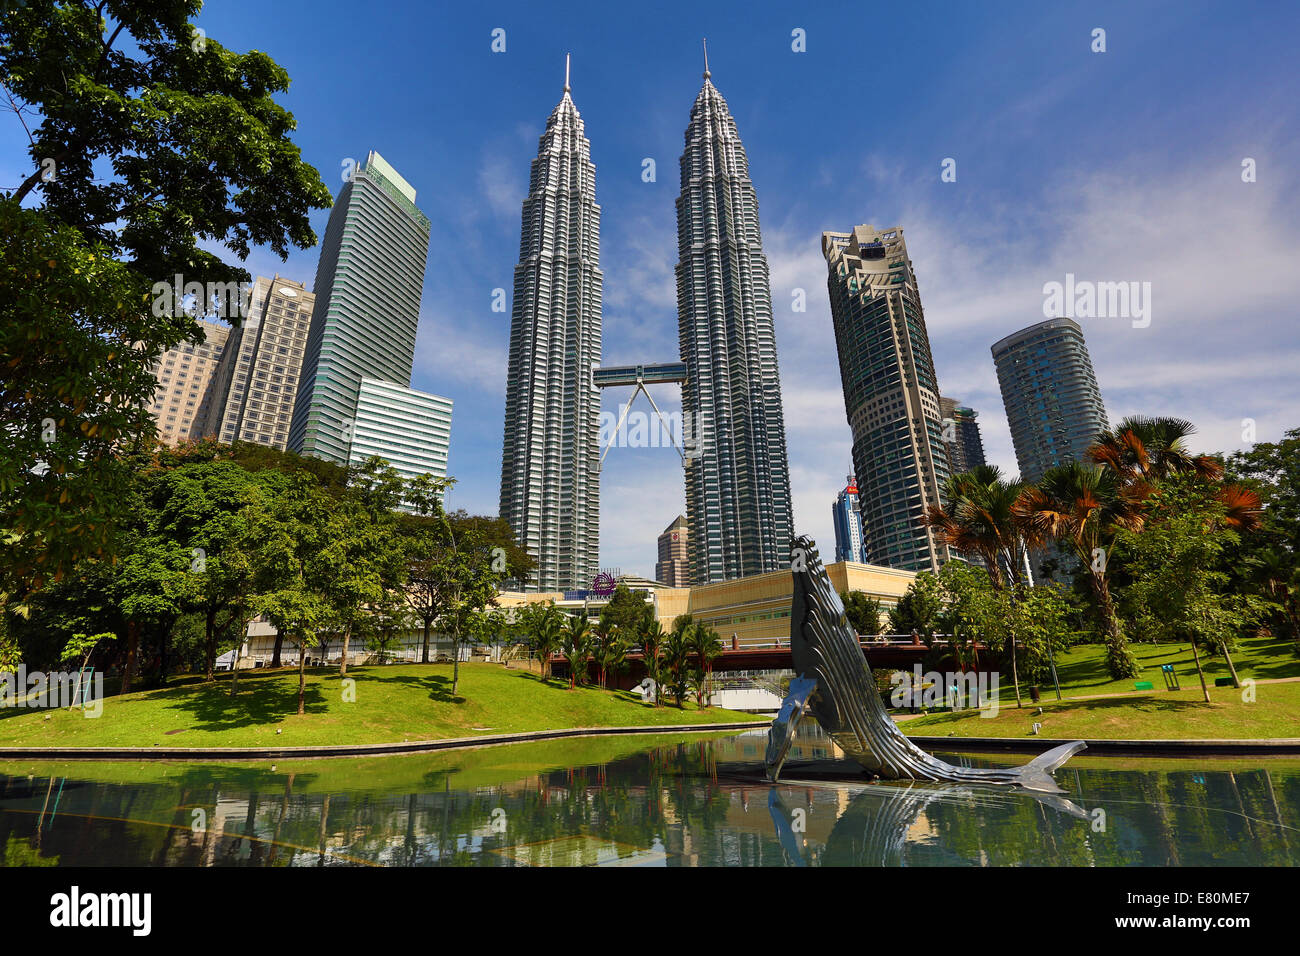 Petronas Twin Towers at KLCC in Kuala Lumpur, Malaysia Stock Photo